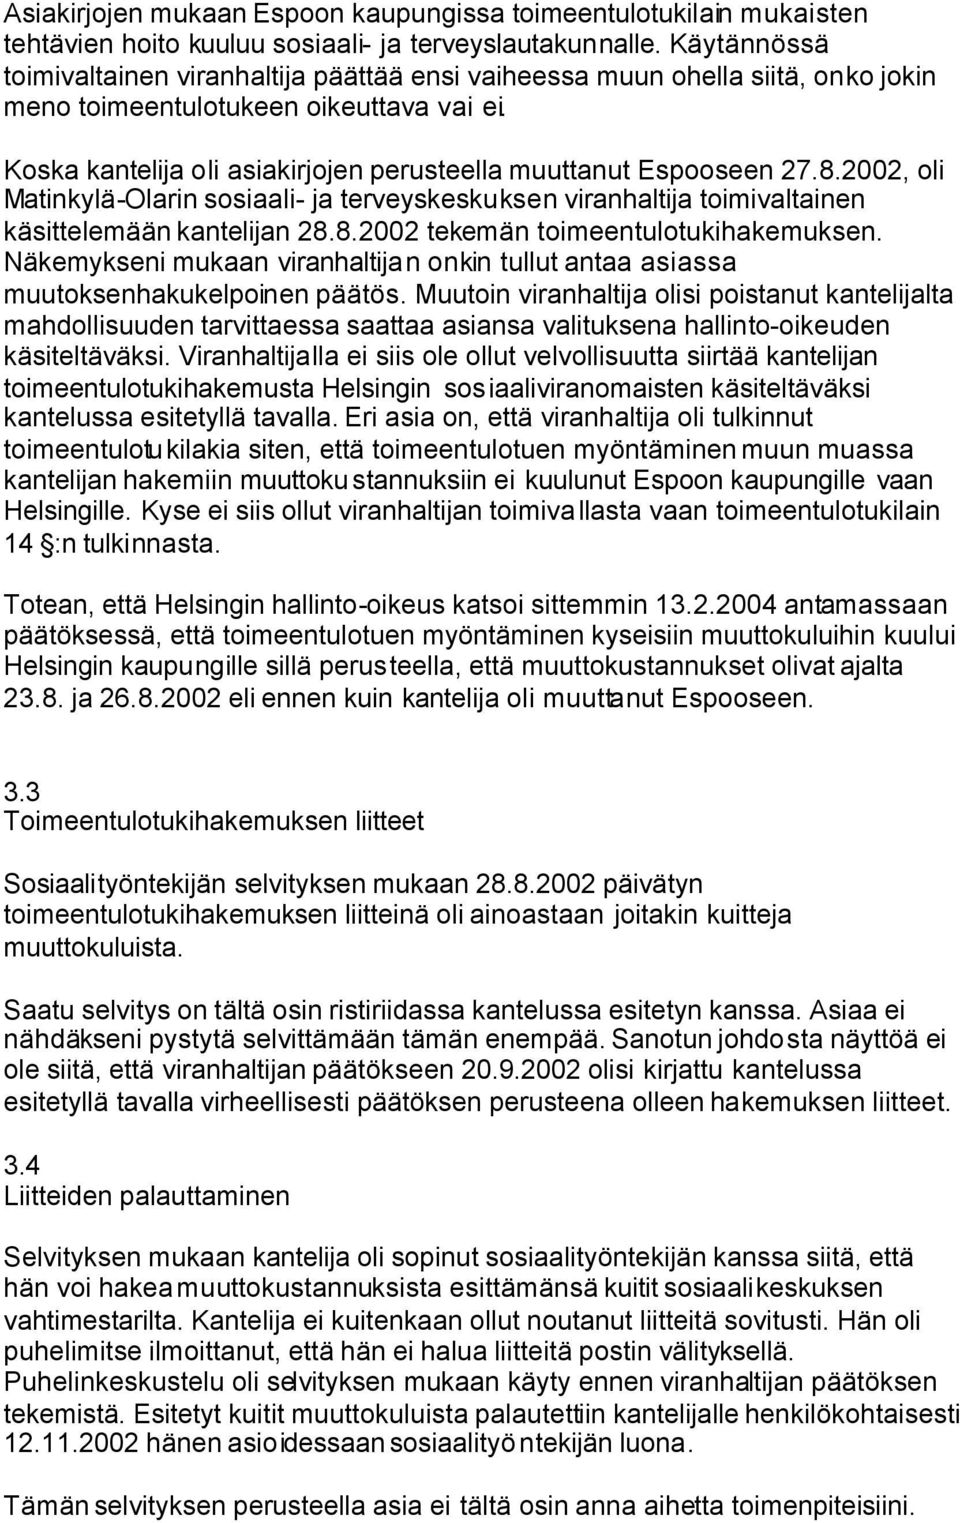 Koska kantelija oli asiakirjojen perusteella muuttanut Espooseen 27.8.2002, oli Matinkylä-Olarin sosiaali- ja terveyskeskuksen viranhaltija toimivaltainen käsittelemään kantelijan 28.8.2002 tekemän toimeentulotukihakemuksen.